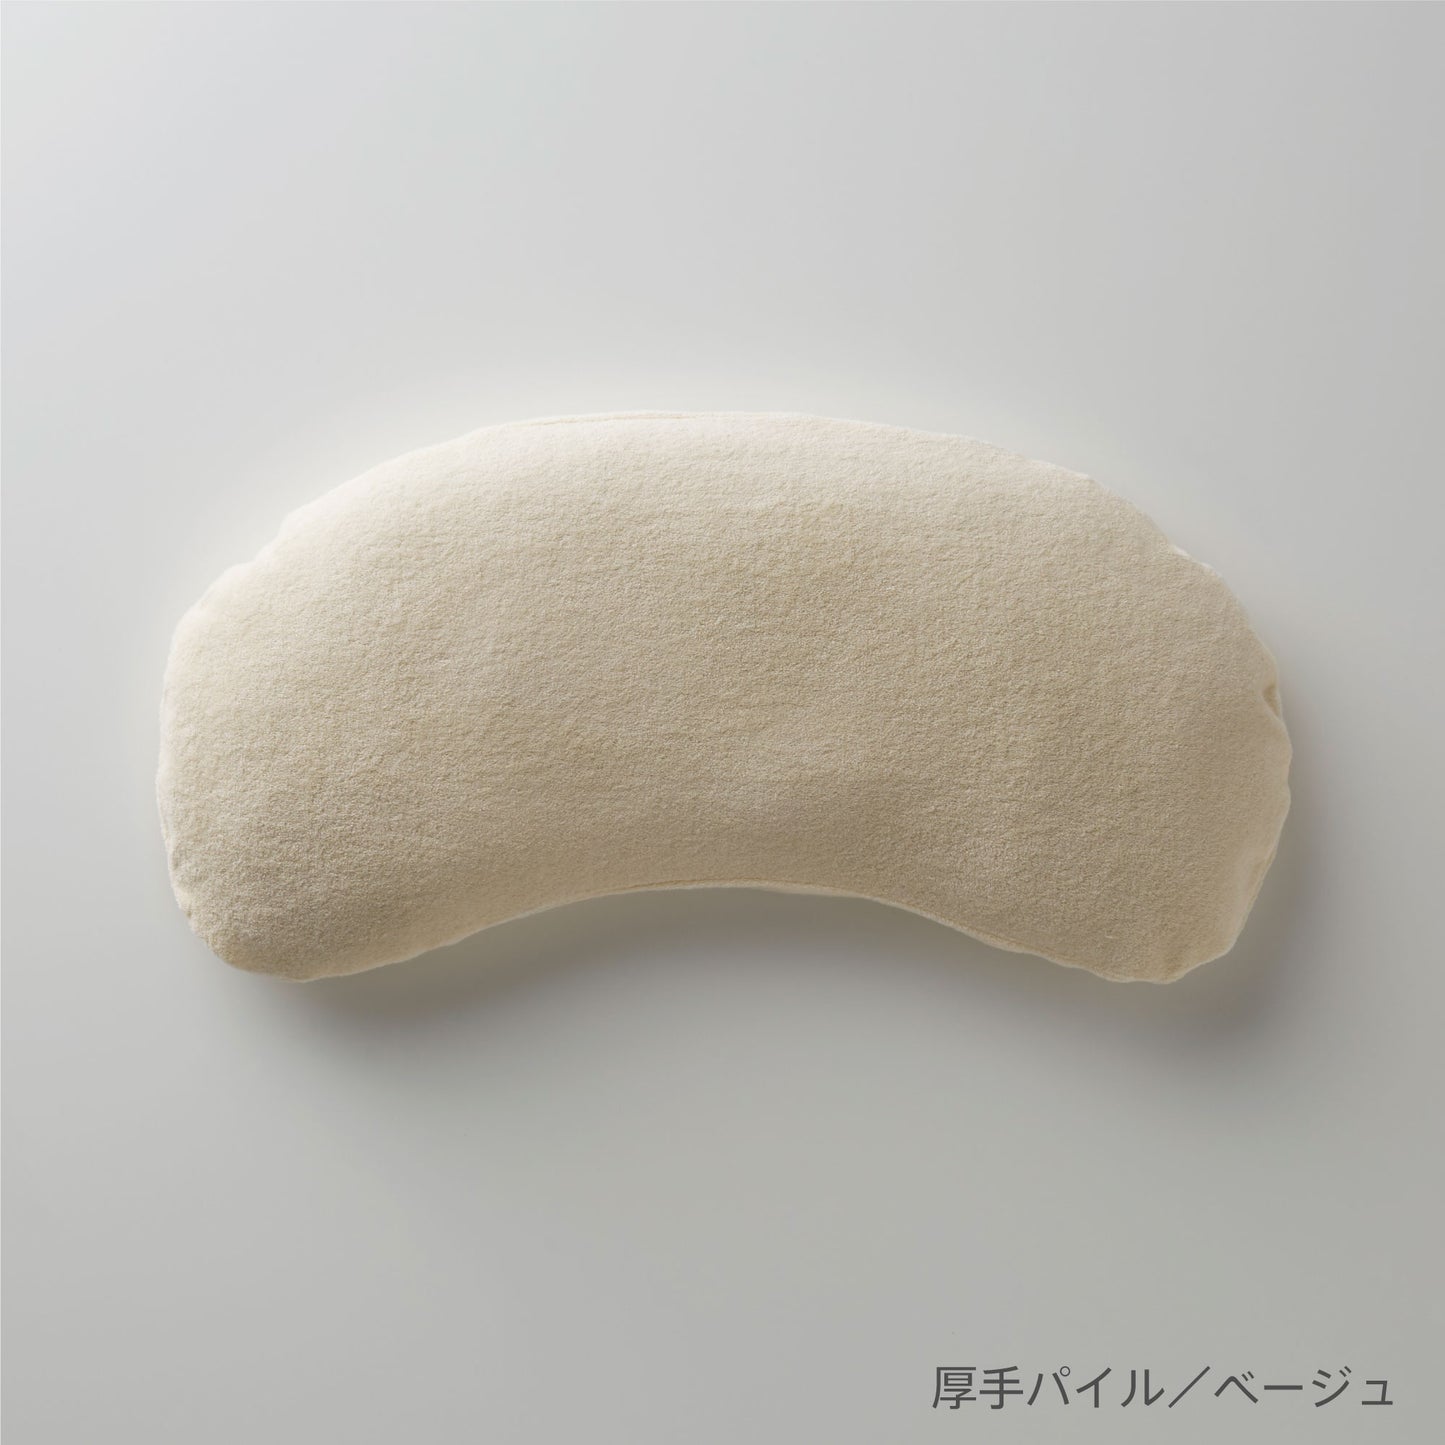 まくらのキタムラ ジムナストキッズ専用枕カバー